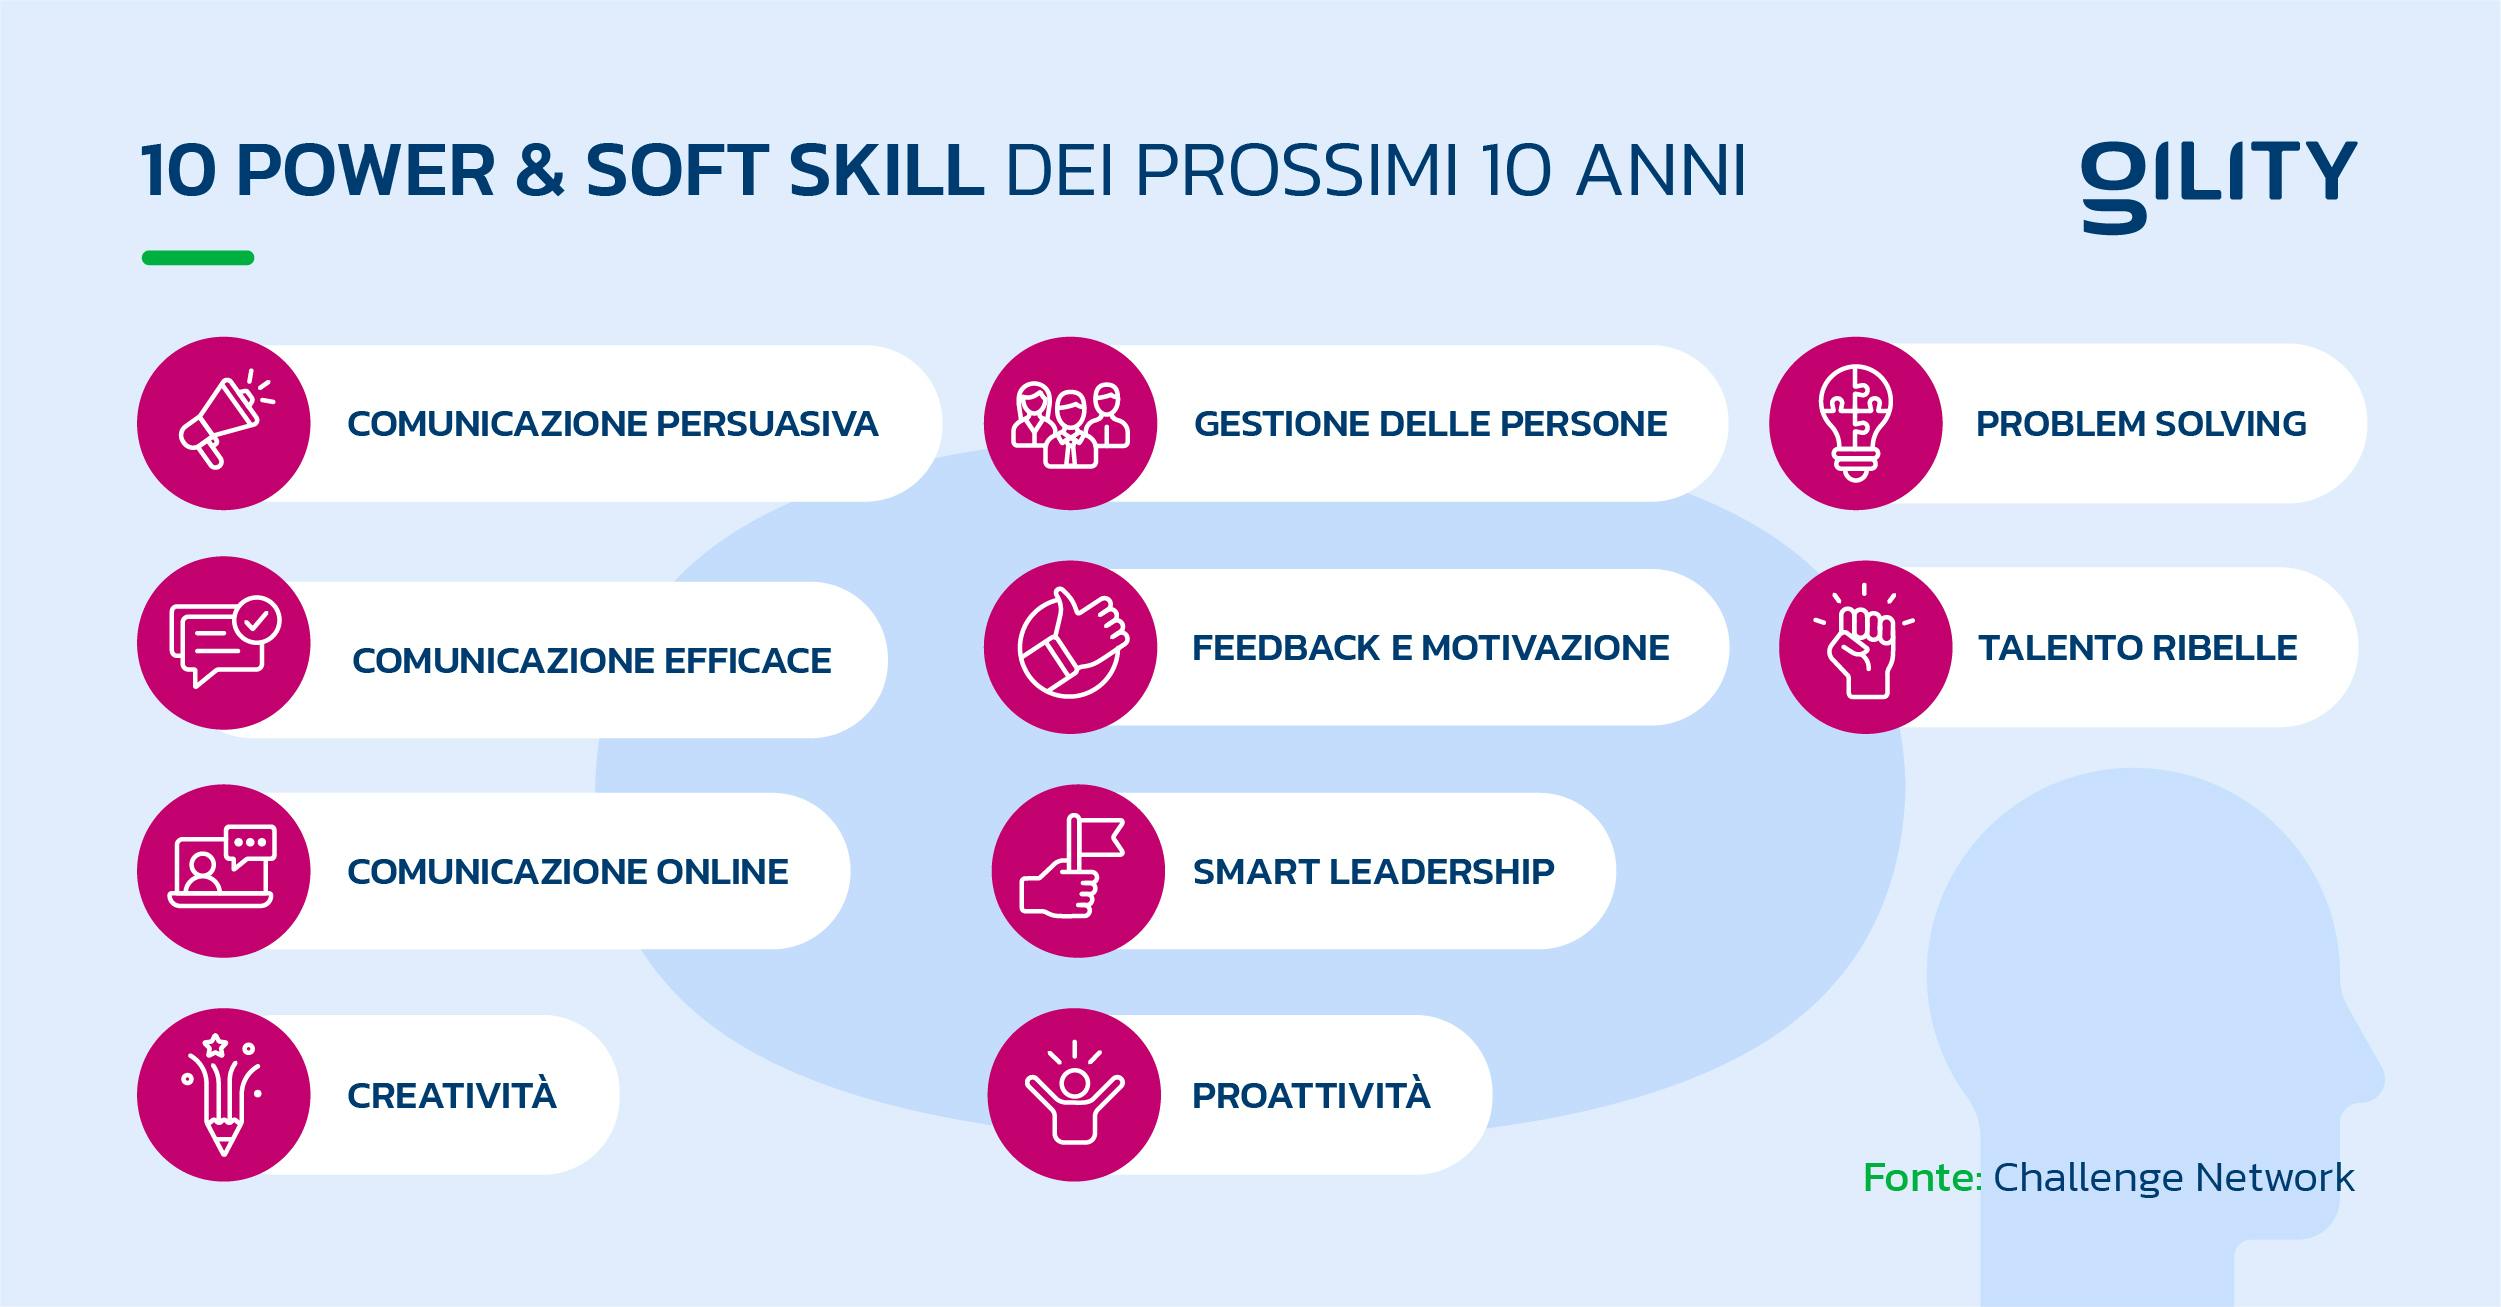 Infografica con elenco delle 10 power e soft skills fondamentali per i prossimi 10 anni secondo Challenge Network